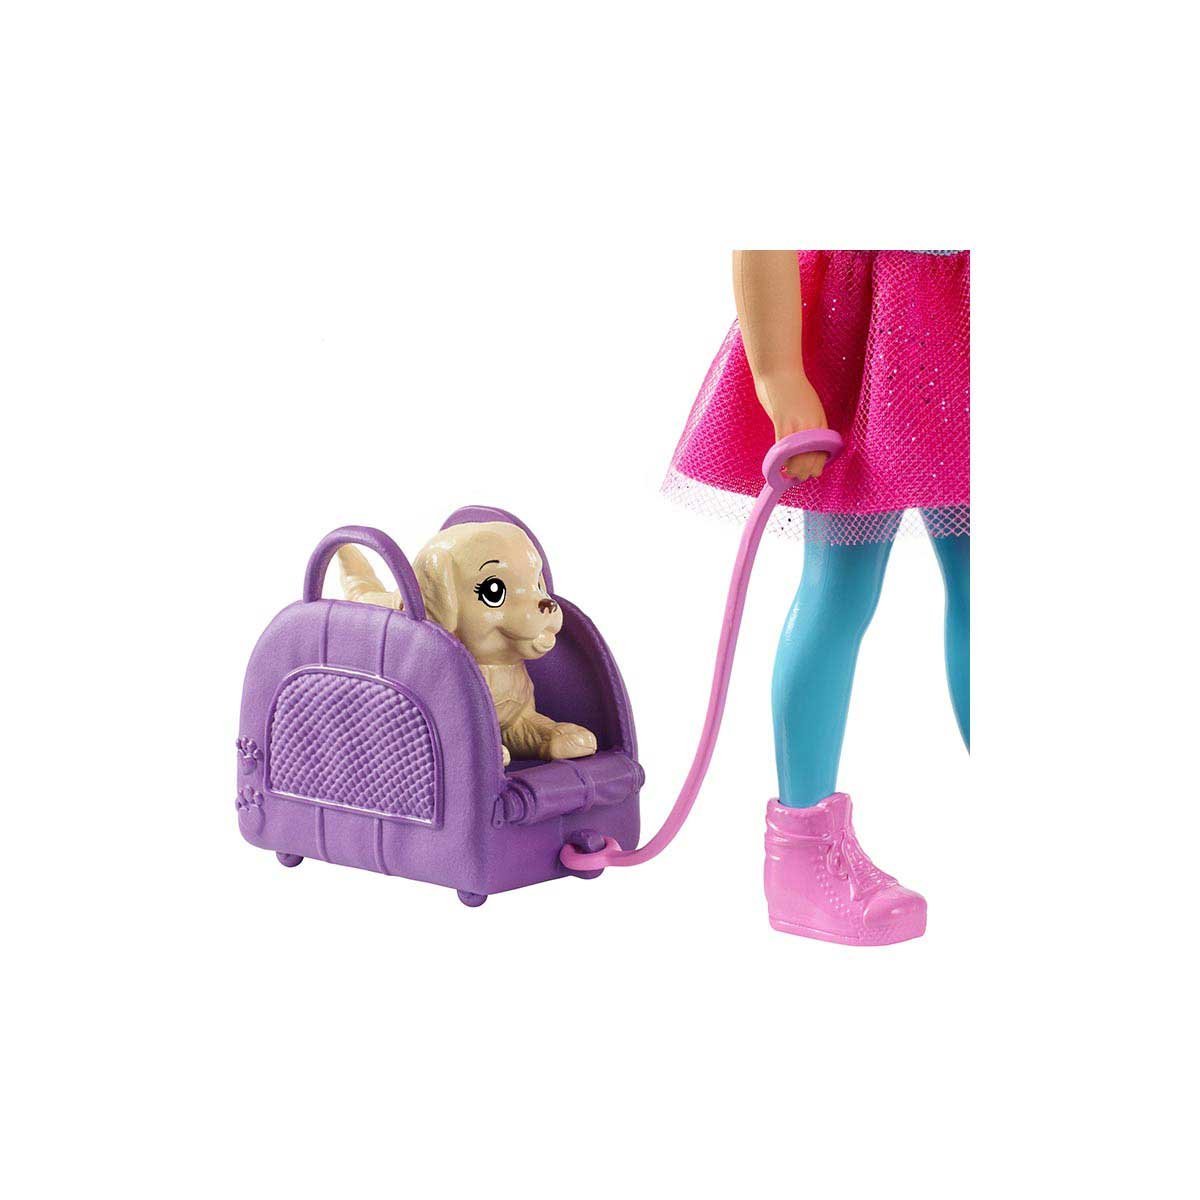 Barbie Entretenimiento Explora Y Descubre Chelsea